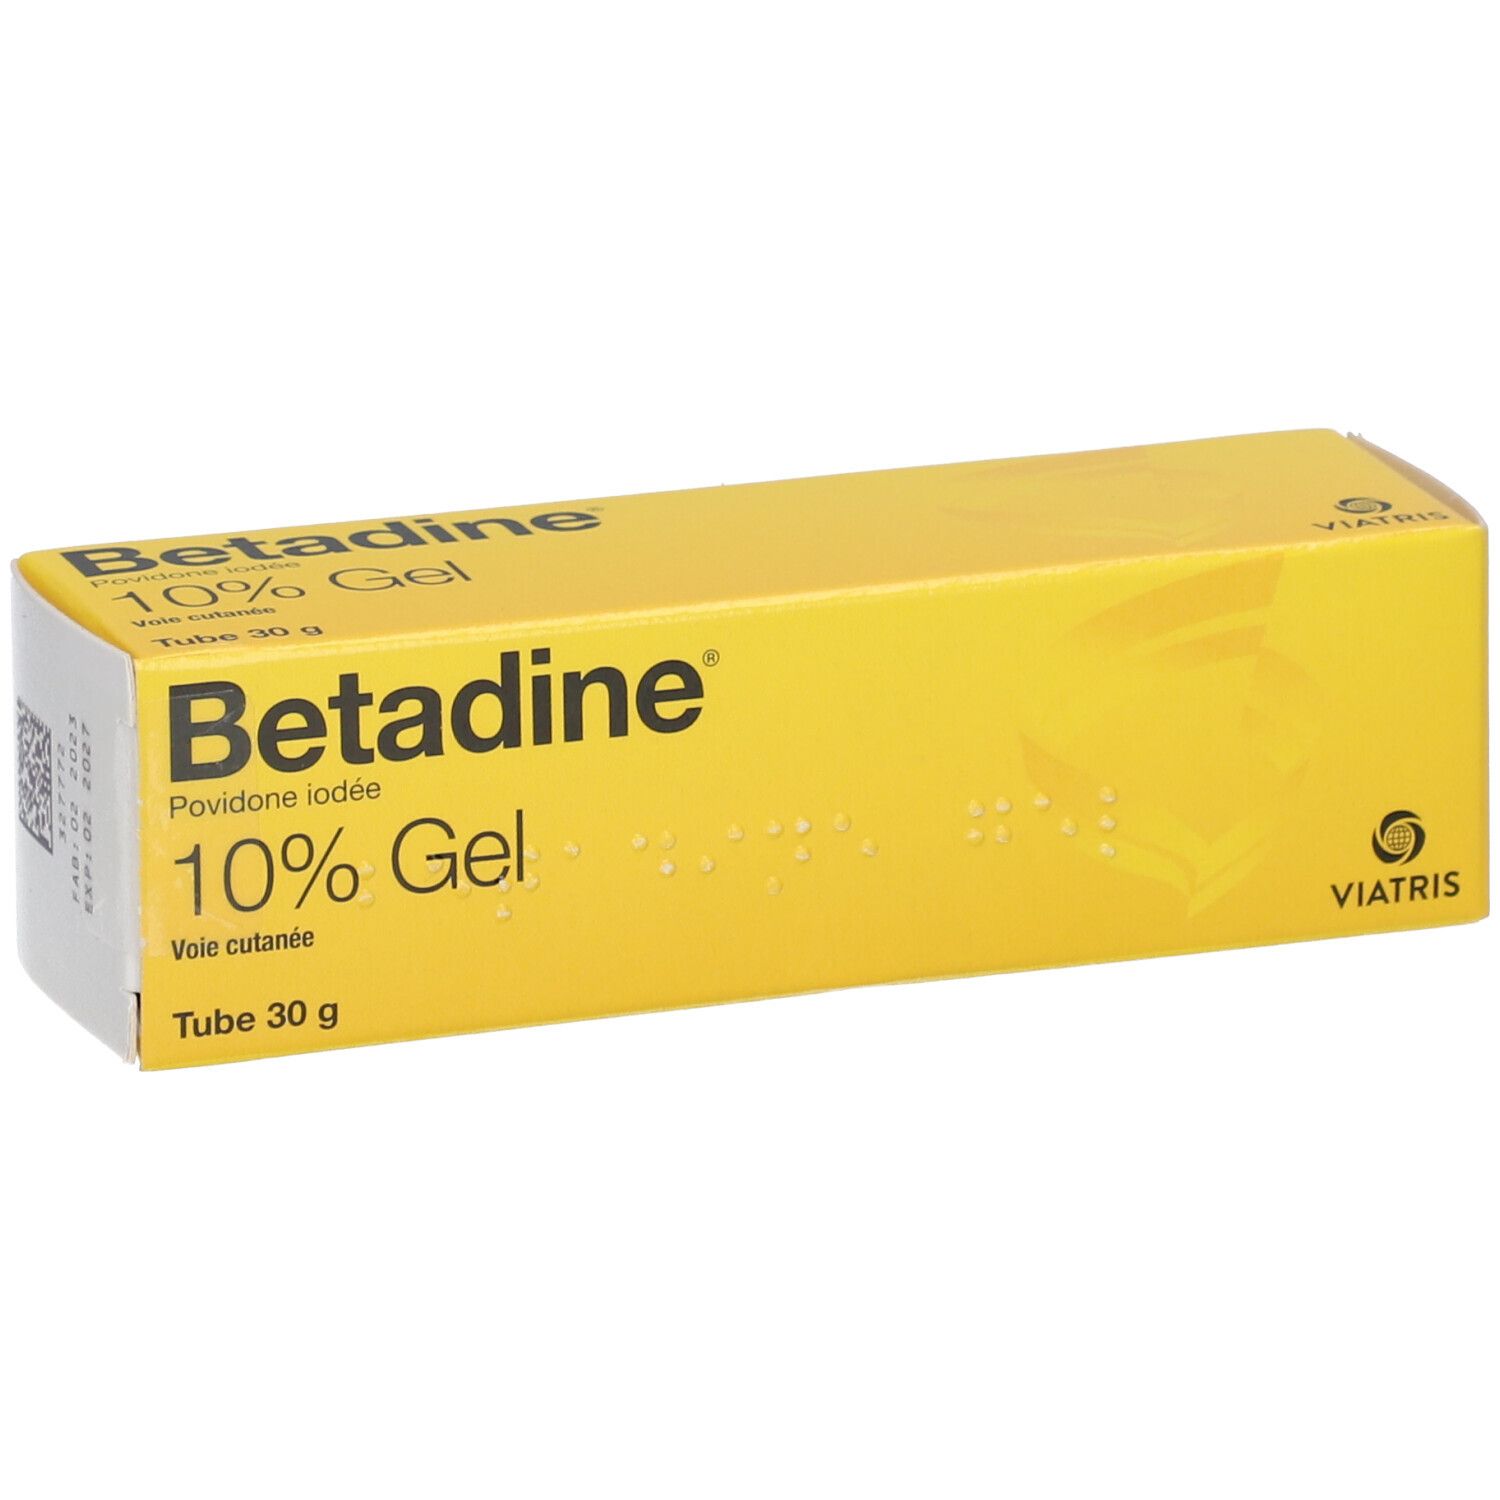 Betadine 10% gel, tube de 30g - désinfectant